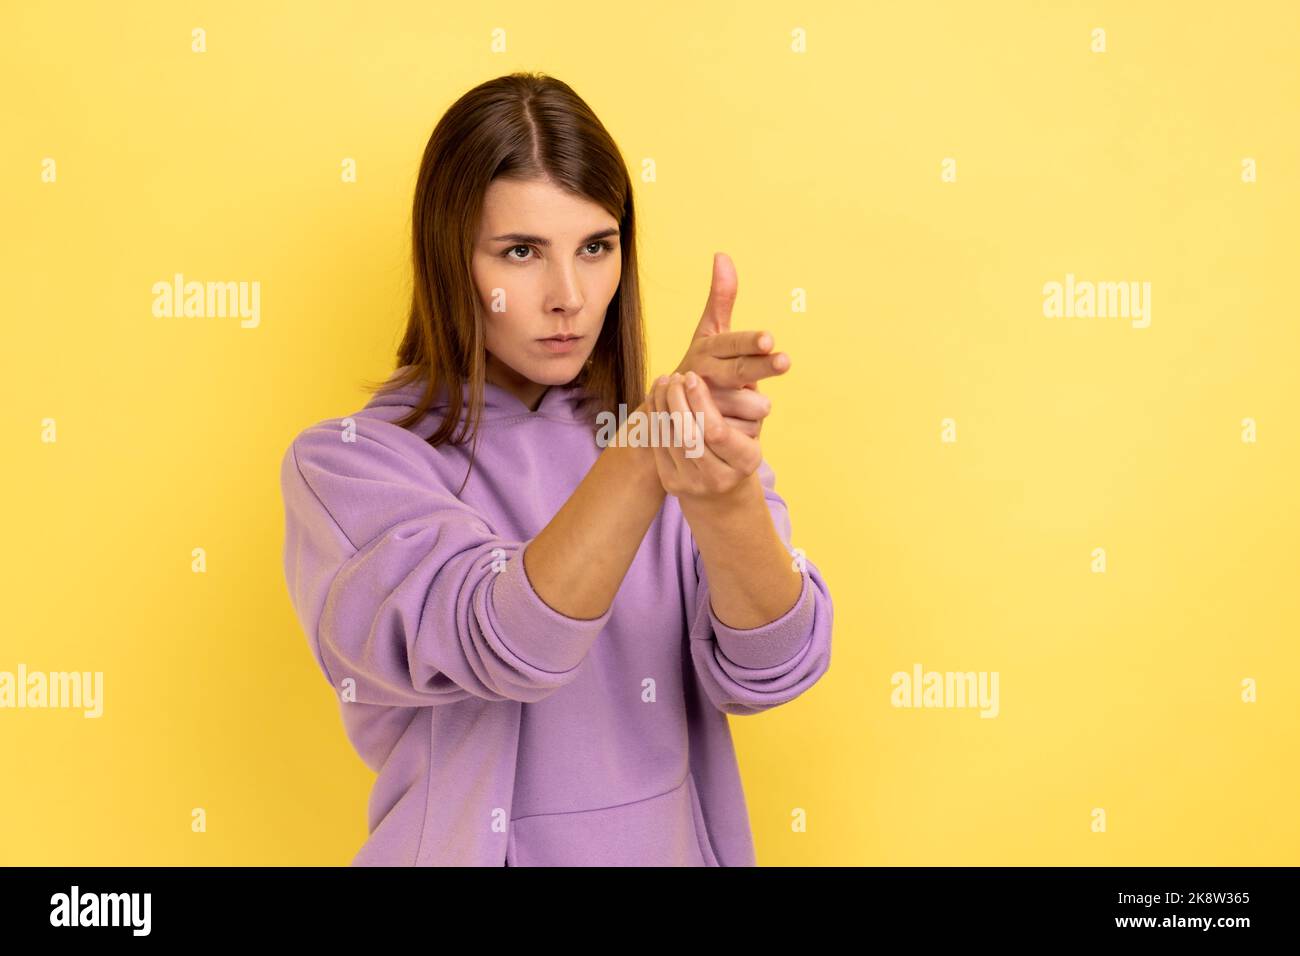 Ich werde Euch töten. Porträt einer wütenden Frau, die mit Fingergewehren auf die Kamera zeigt, mit Schießdrohungen droht, Hände imitieren Waffen und trägt einen violetten Hoodie. Innenaufnahme des Studios isoliert auf gelbem Hintergrund. Stockfoto